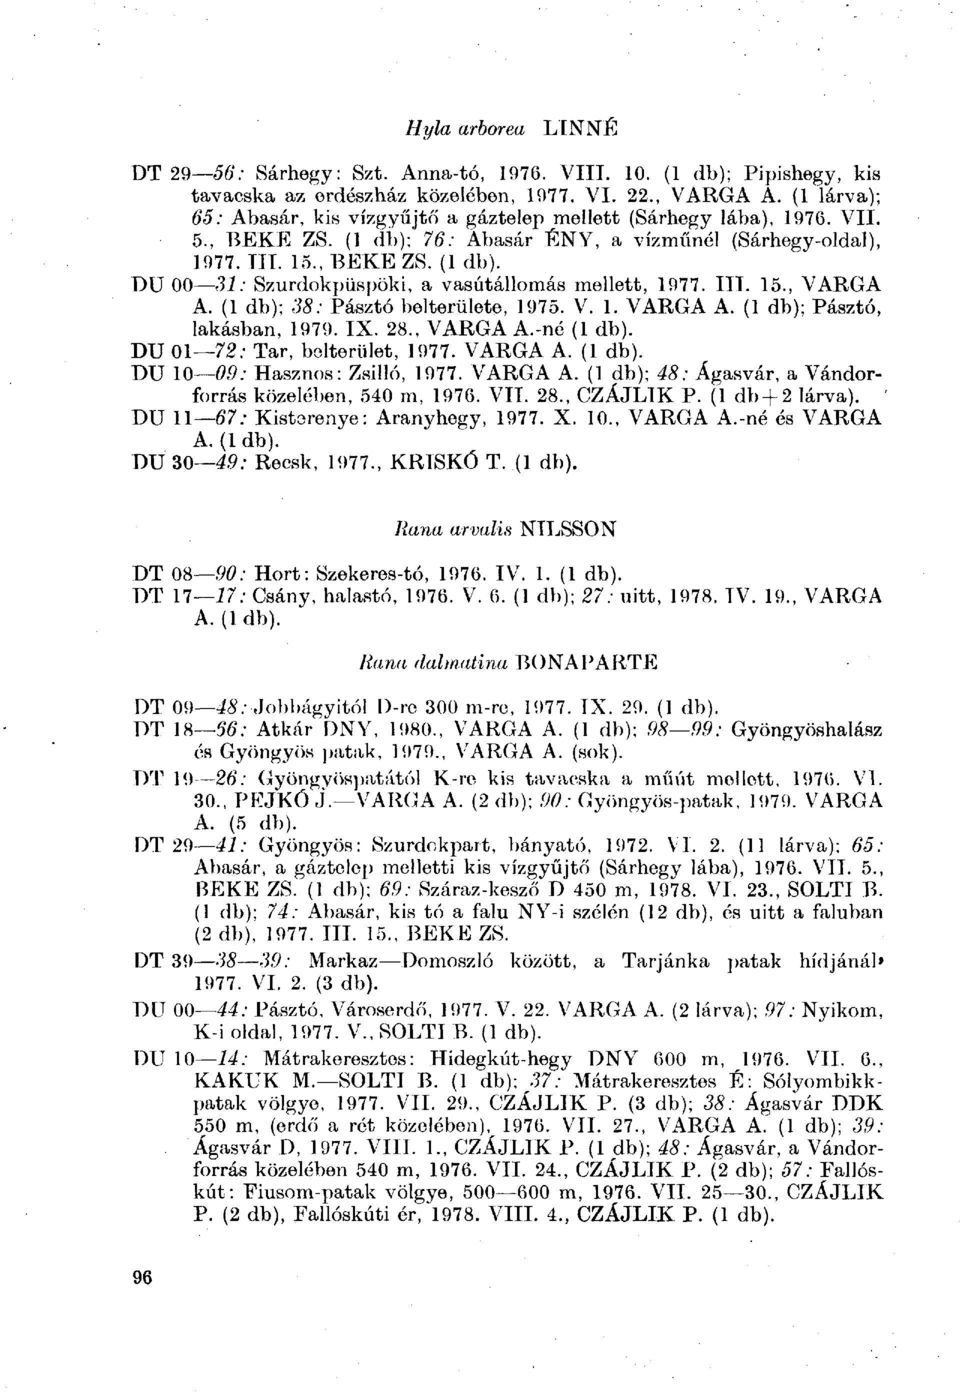 II 15., VARGA A. (1 db); 38: Pásztó belterülete, 1975. 1. VARGA A. (1 db); Pásztó, lakásban, 1979. I 28., VARGA A.-né (1 db). DU 01 72; Tar, belterület, 1977. VARGA A. (1 db). DU 10 09: Hasznos: Zsilló, 1977.